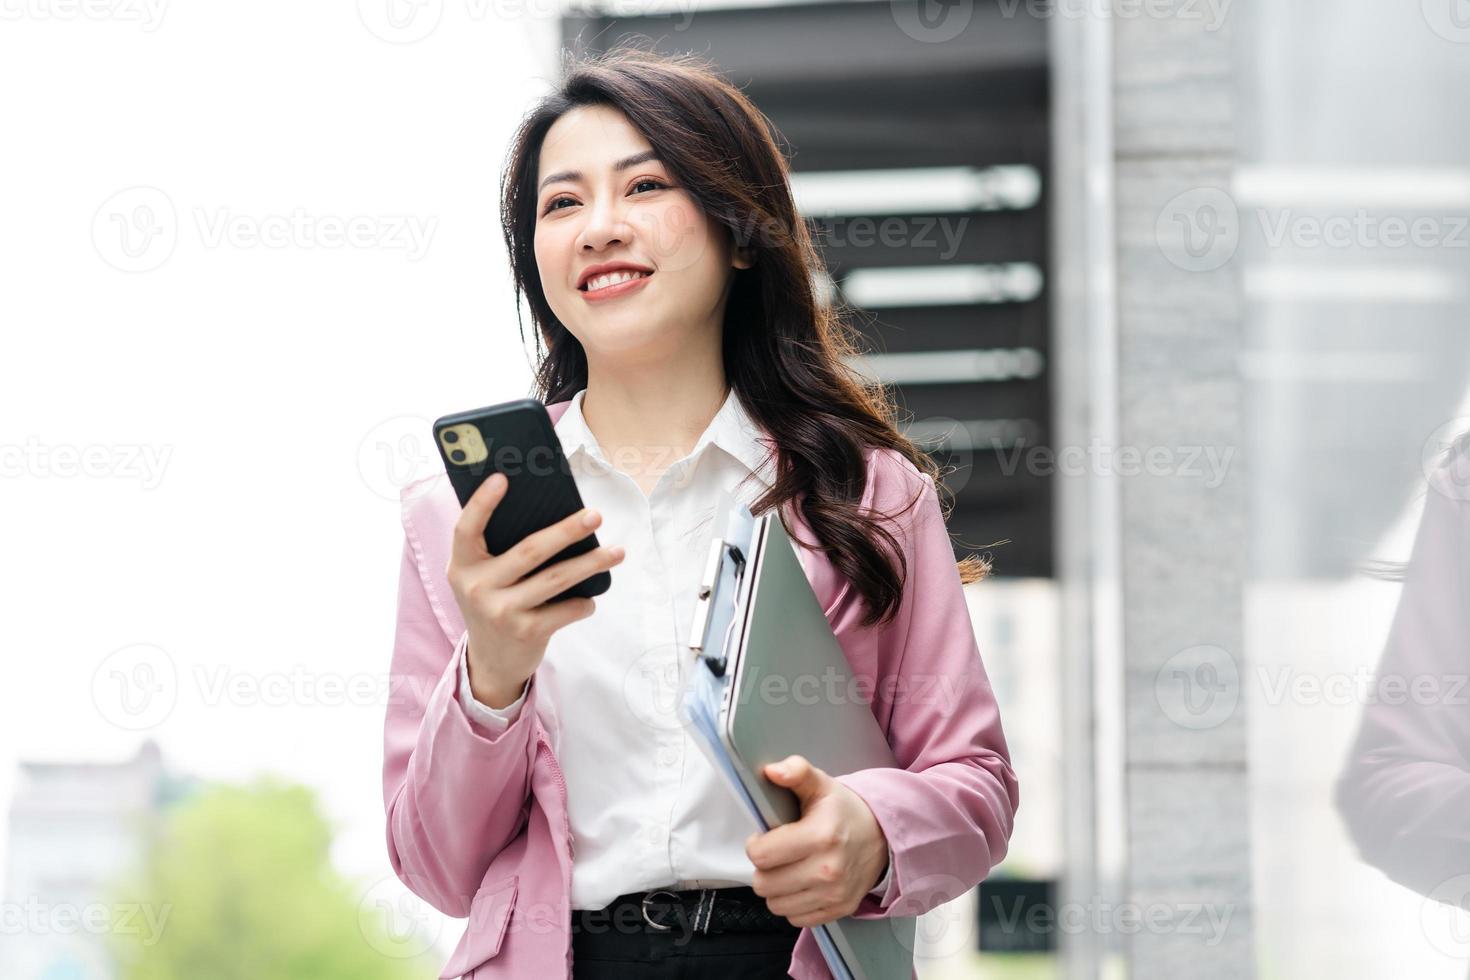 imagen de mujer de negocios asiática en la calle foto